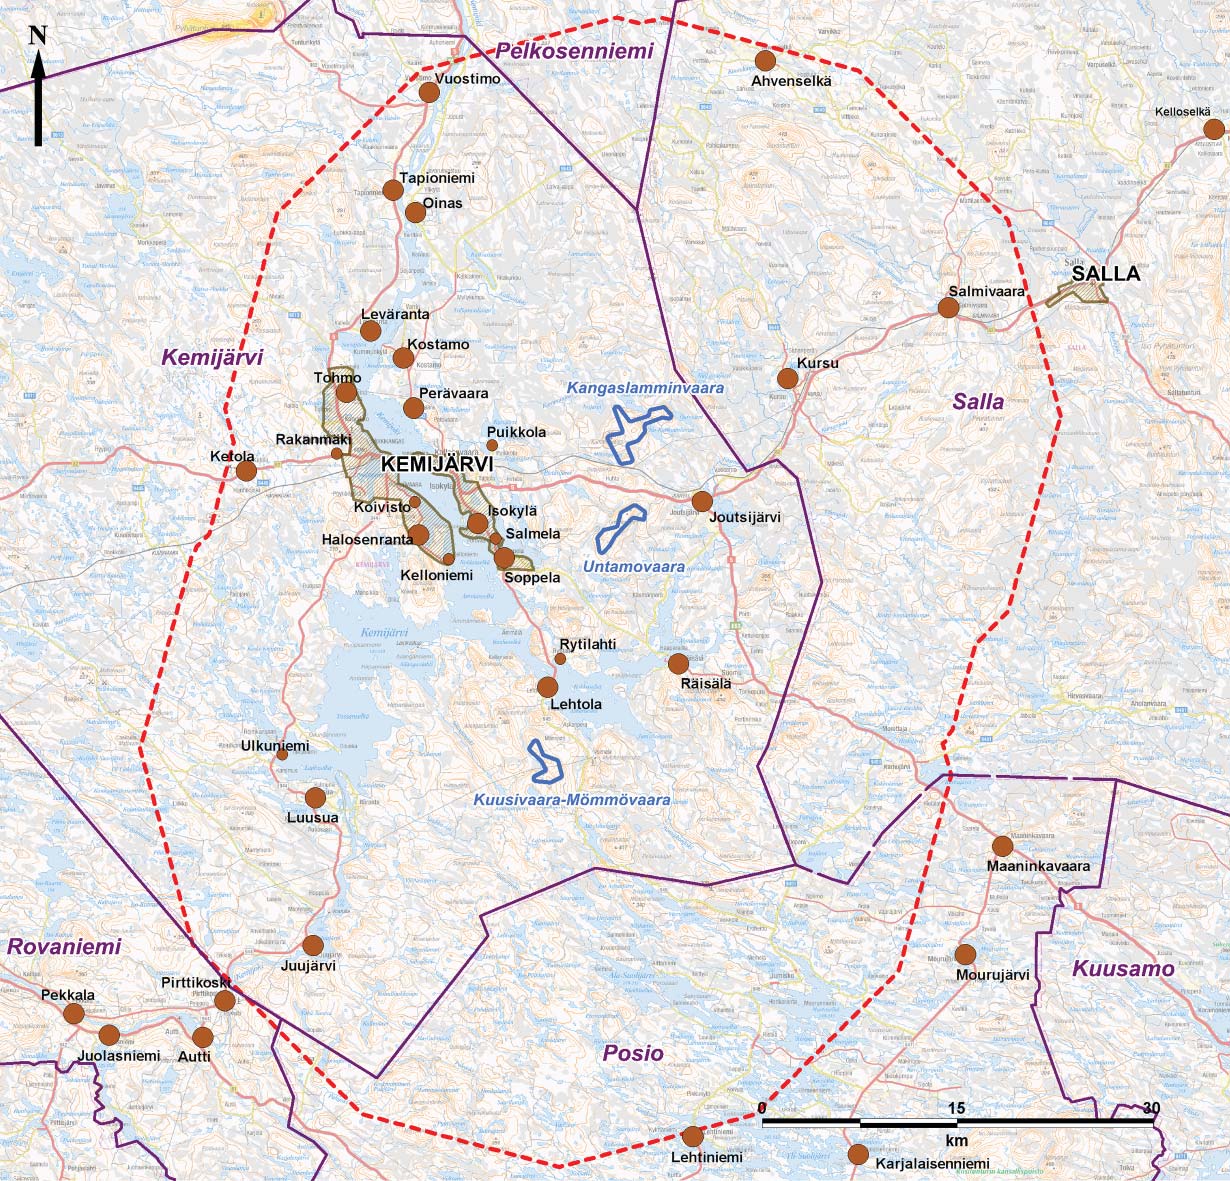 Taulukko 1. Kylät ja taajamat, jotka sijaitsevat 30 kilometrin tarkastelualueella Kemijärven tuulivoimapuistoista. Etäisyydet on mita u laajimmasta tuulivoimapuistovaihtoehdosta (VE 2).